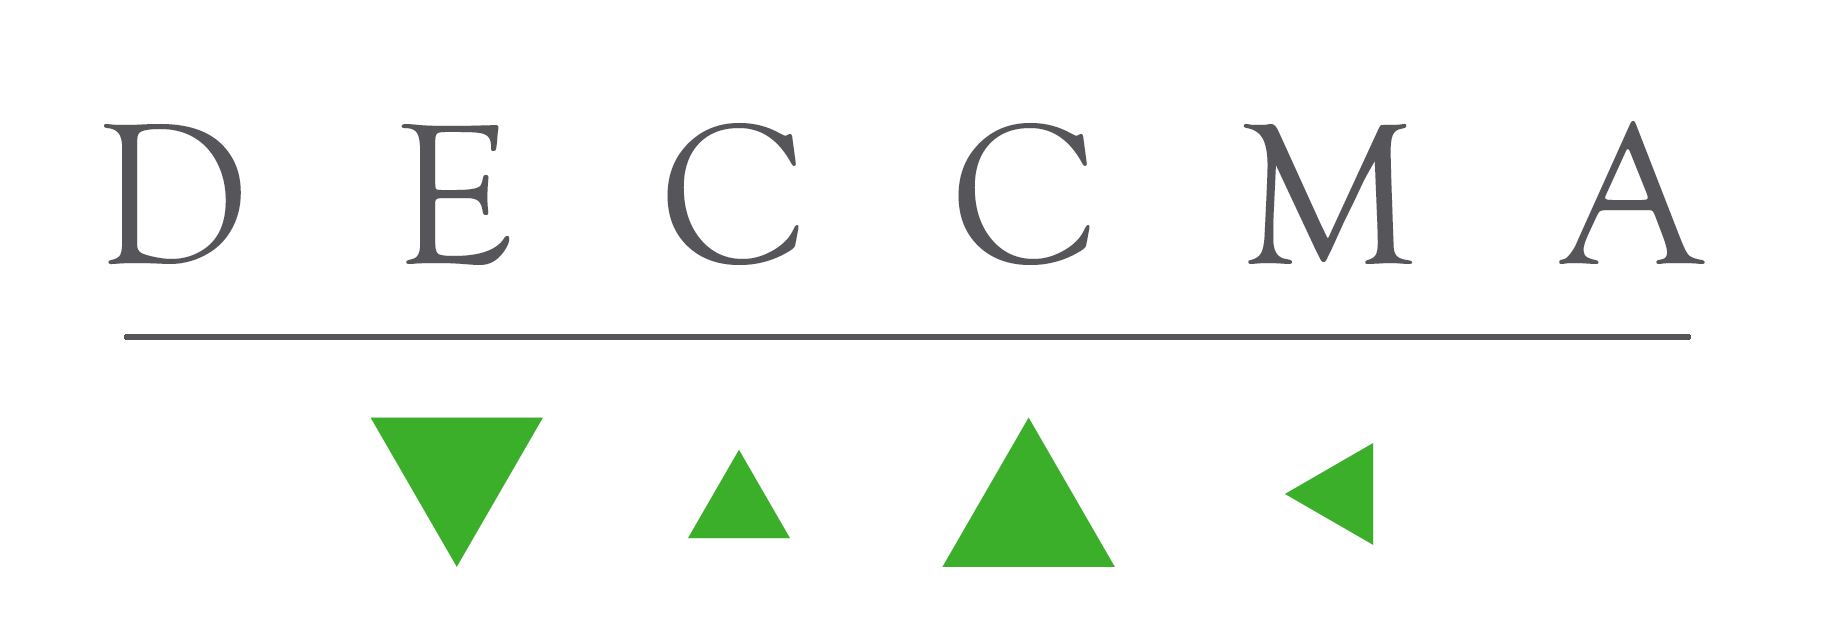 DECCMA logo